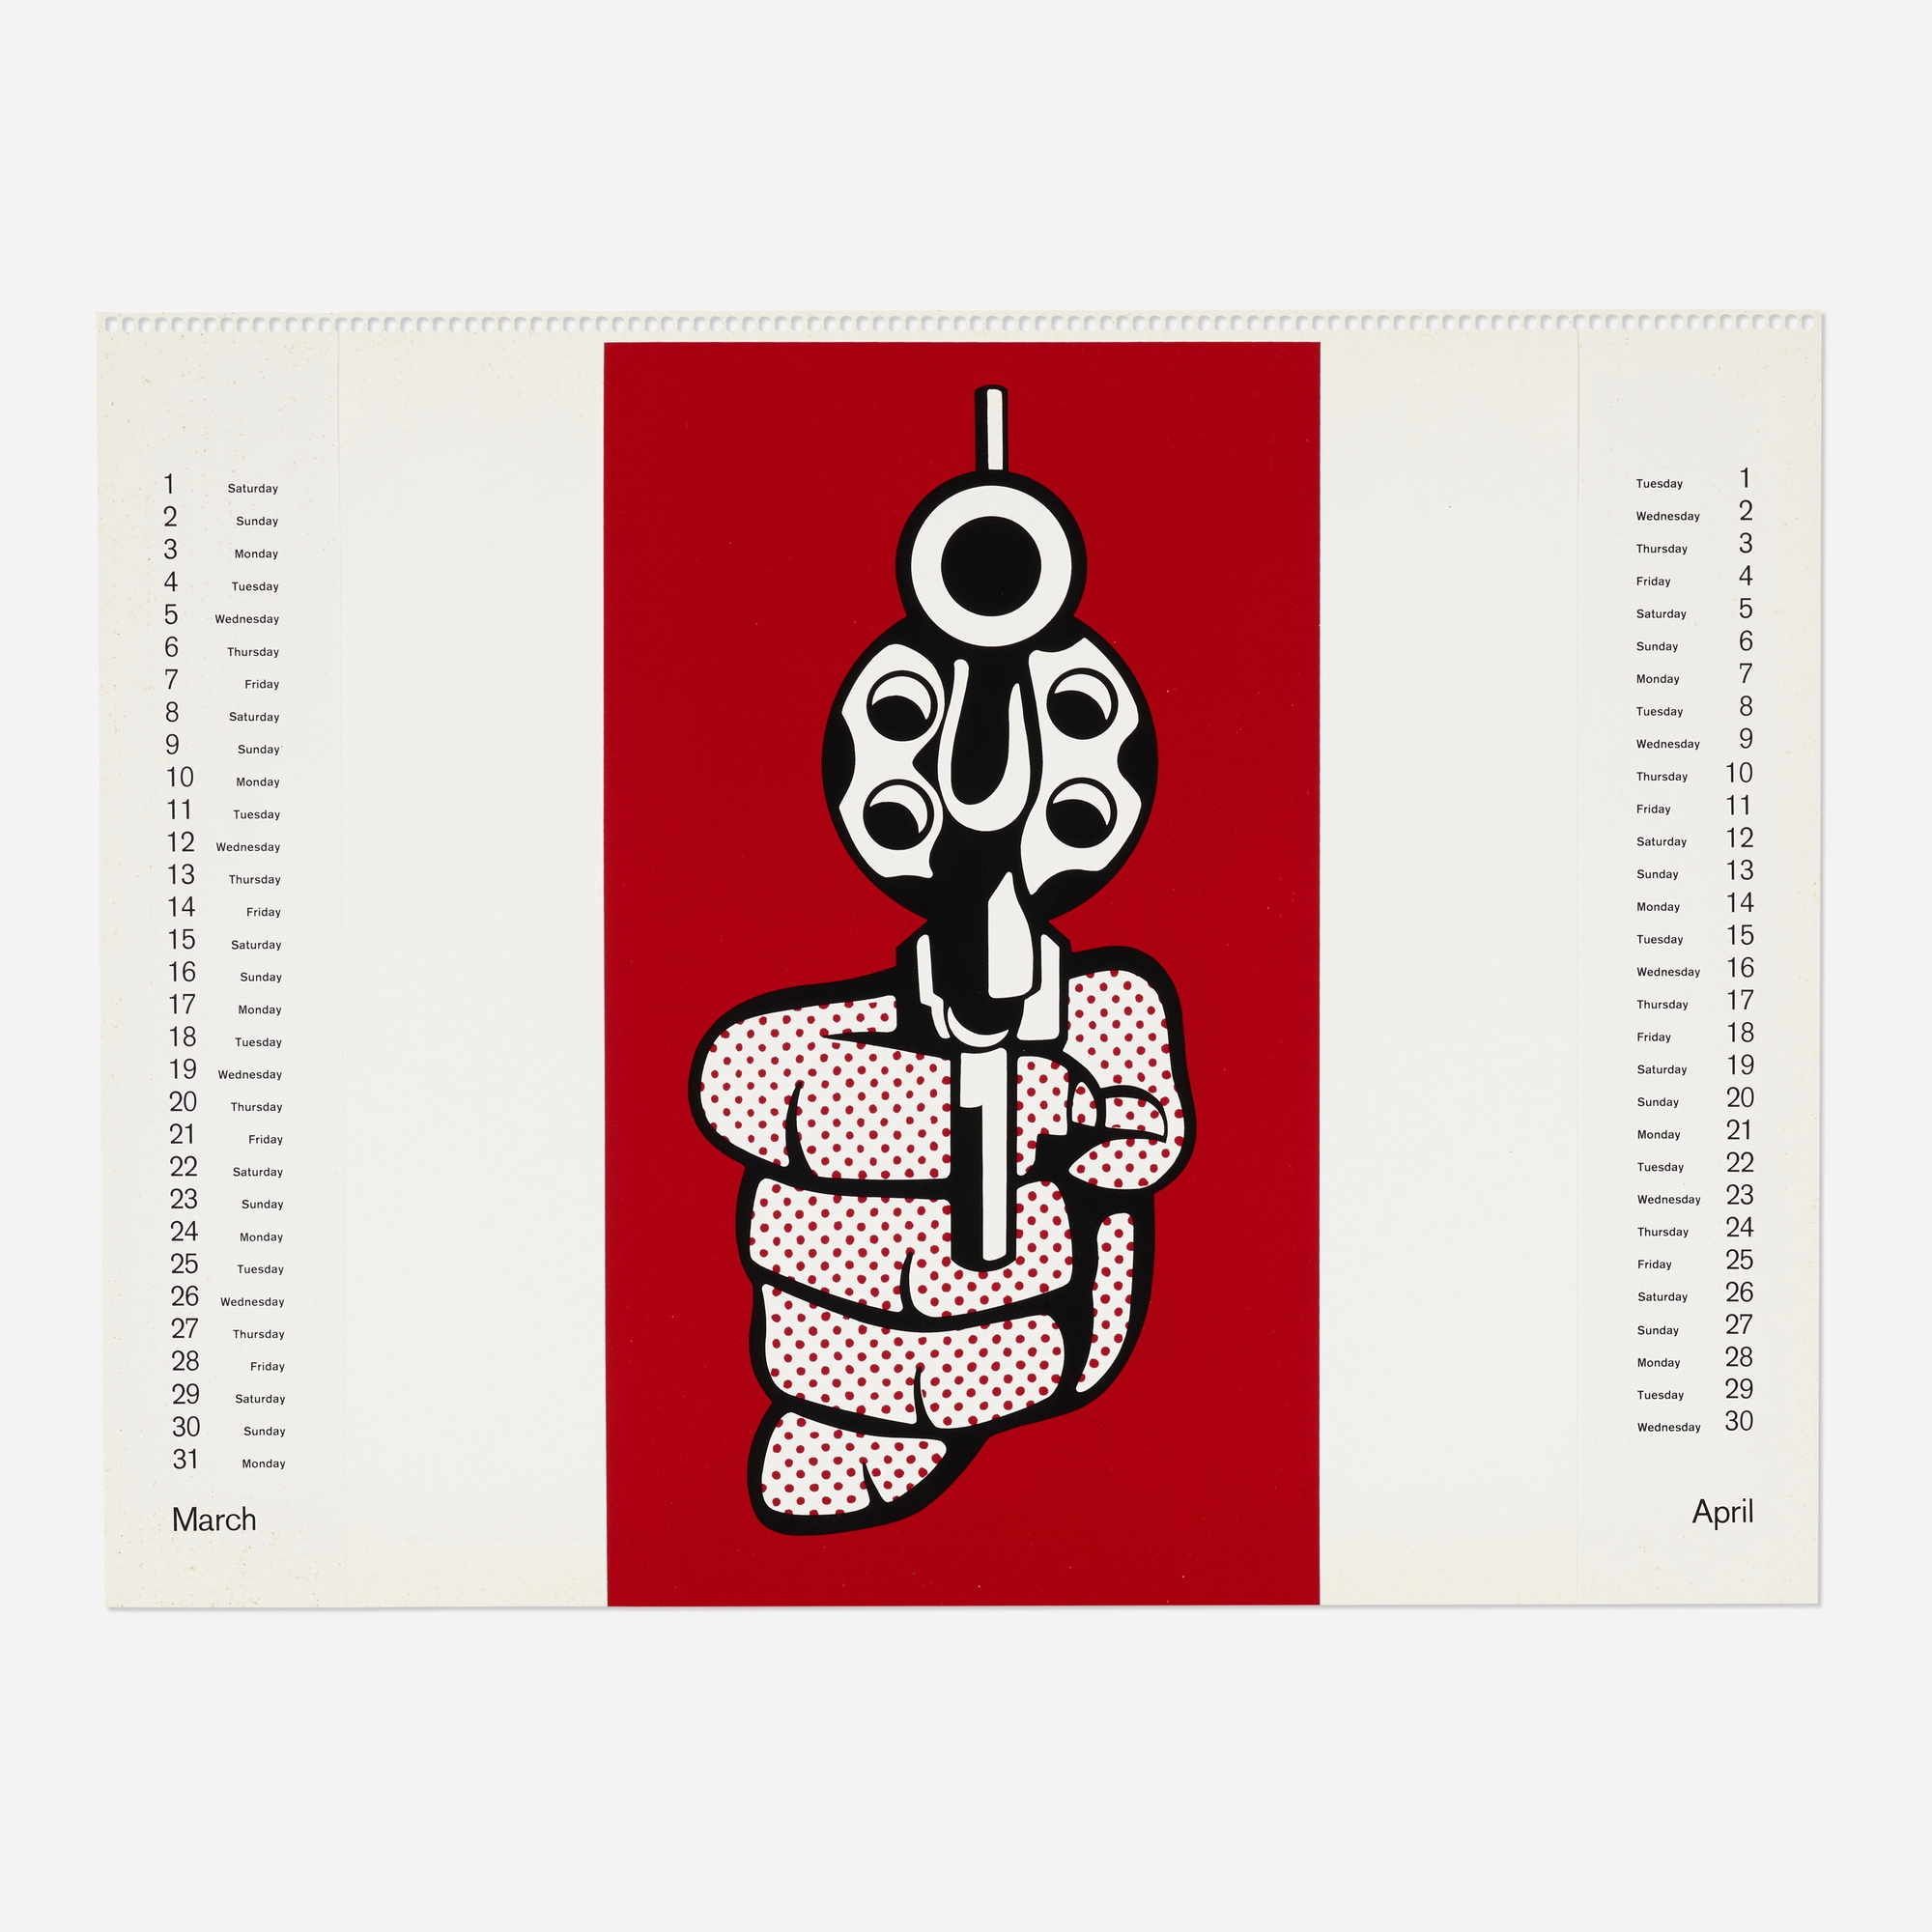 Pistol from Banner, Multiples Calendar 1969